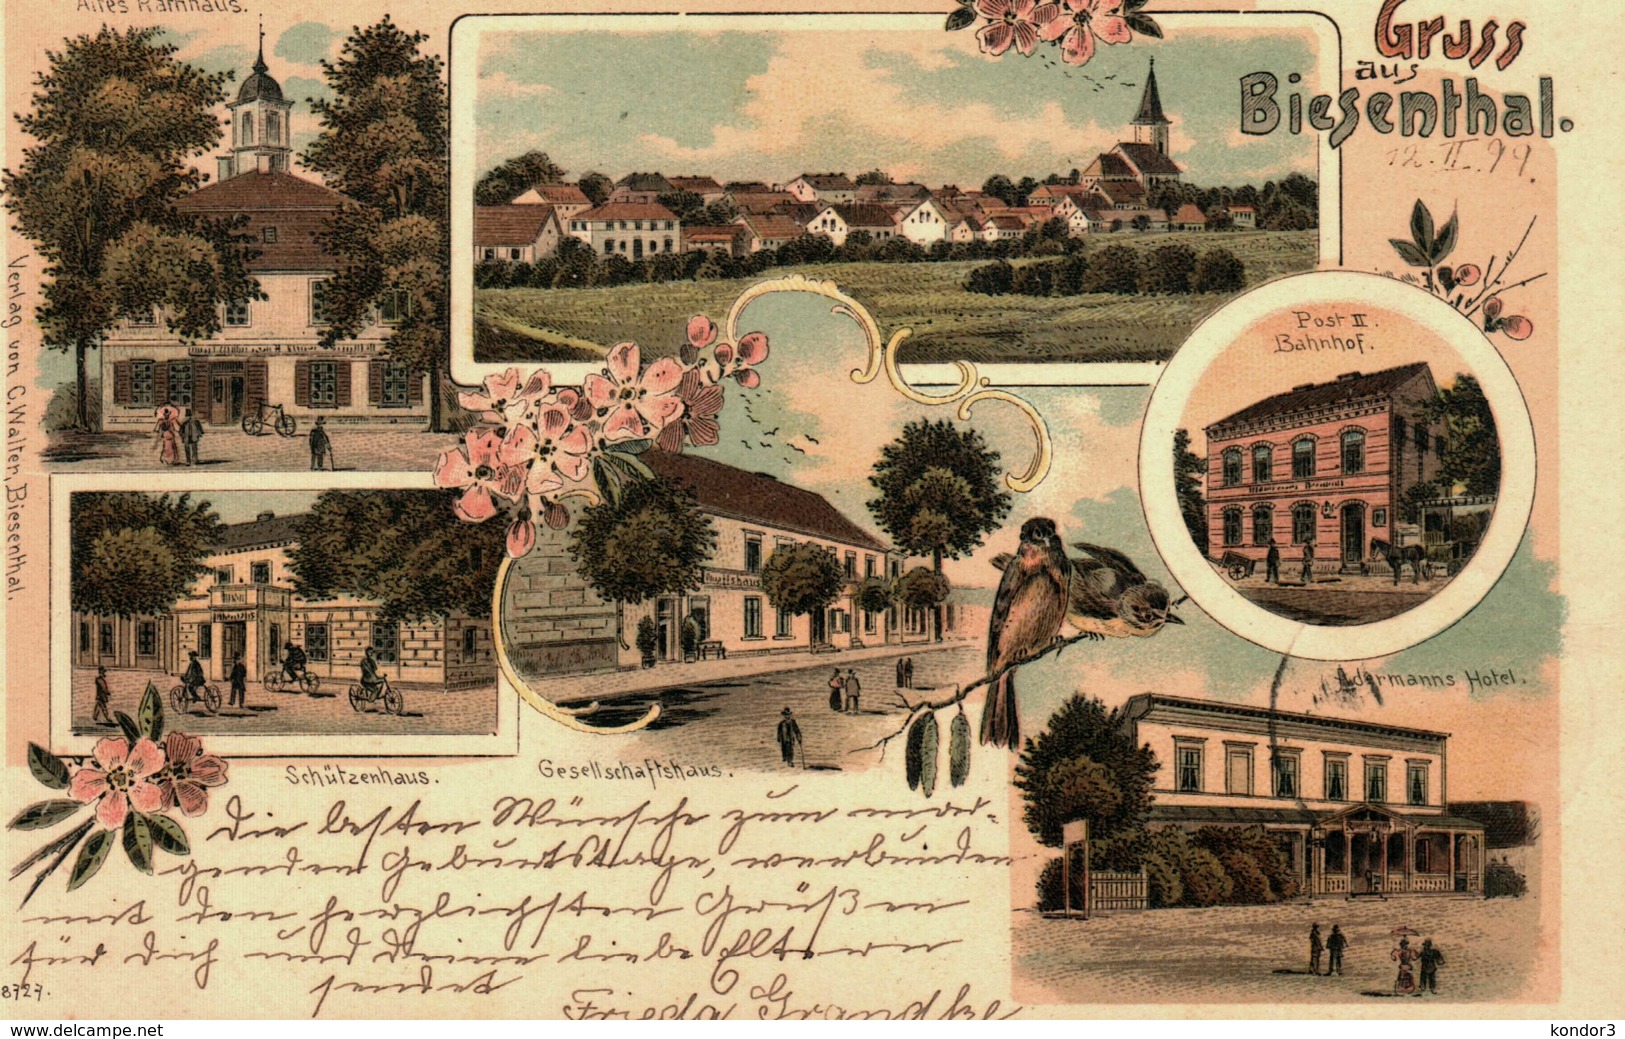 Gruss Aus Biesenthal. Altes Rathhaus. Schützenhaus. Adermanns Hotel. 1899 - Biesenthal